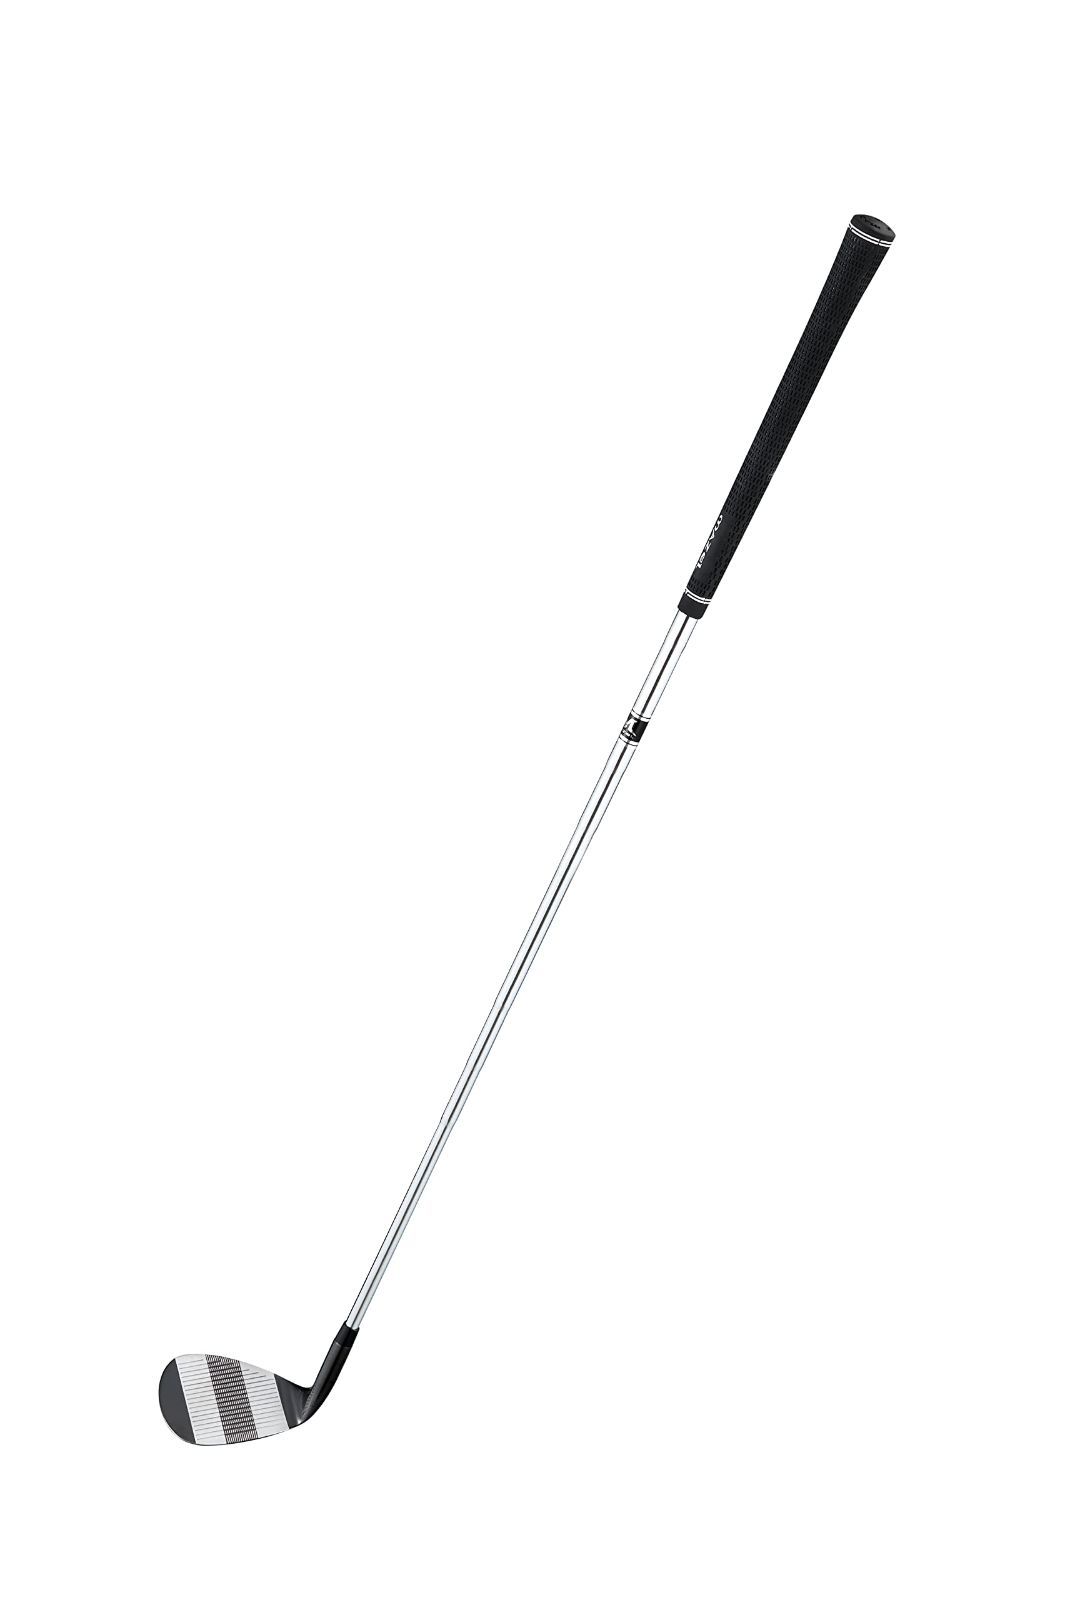 MAZEL マゼル ゴルフサンドウェッジ メンズ 右利き ロフト角:48度、50度、52度、54度、55度、56度、58度、59度、60度、70度  フレックス S ワイドソールウェッジ KK-Select メルカリ